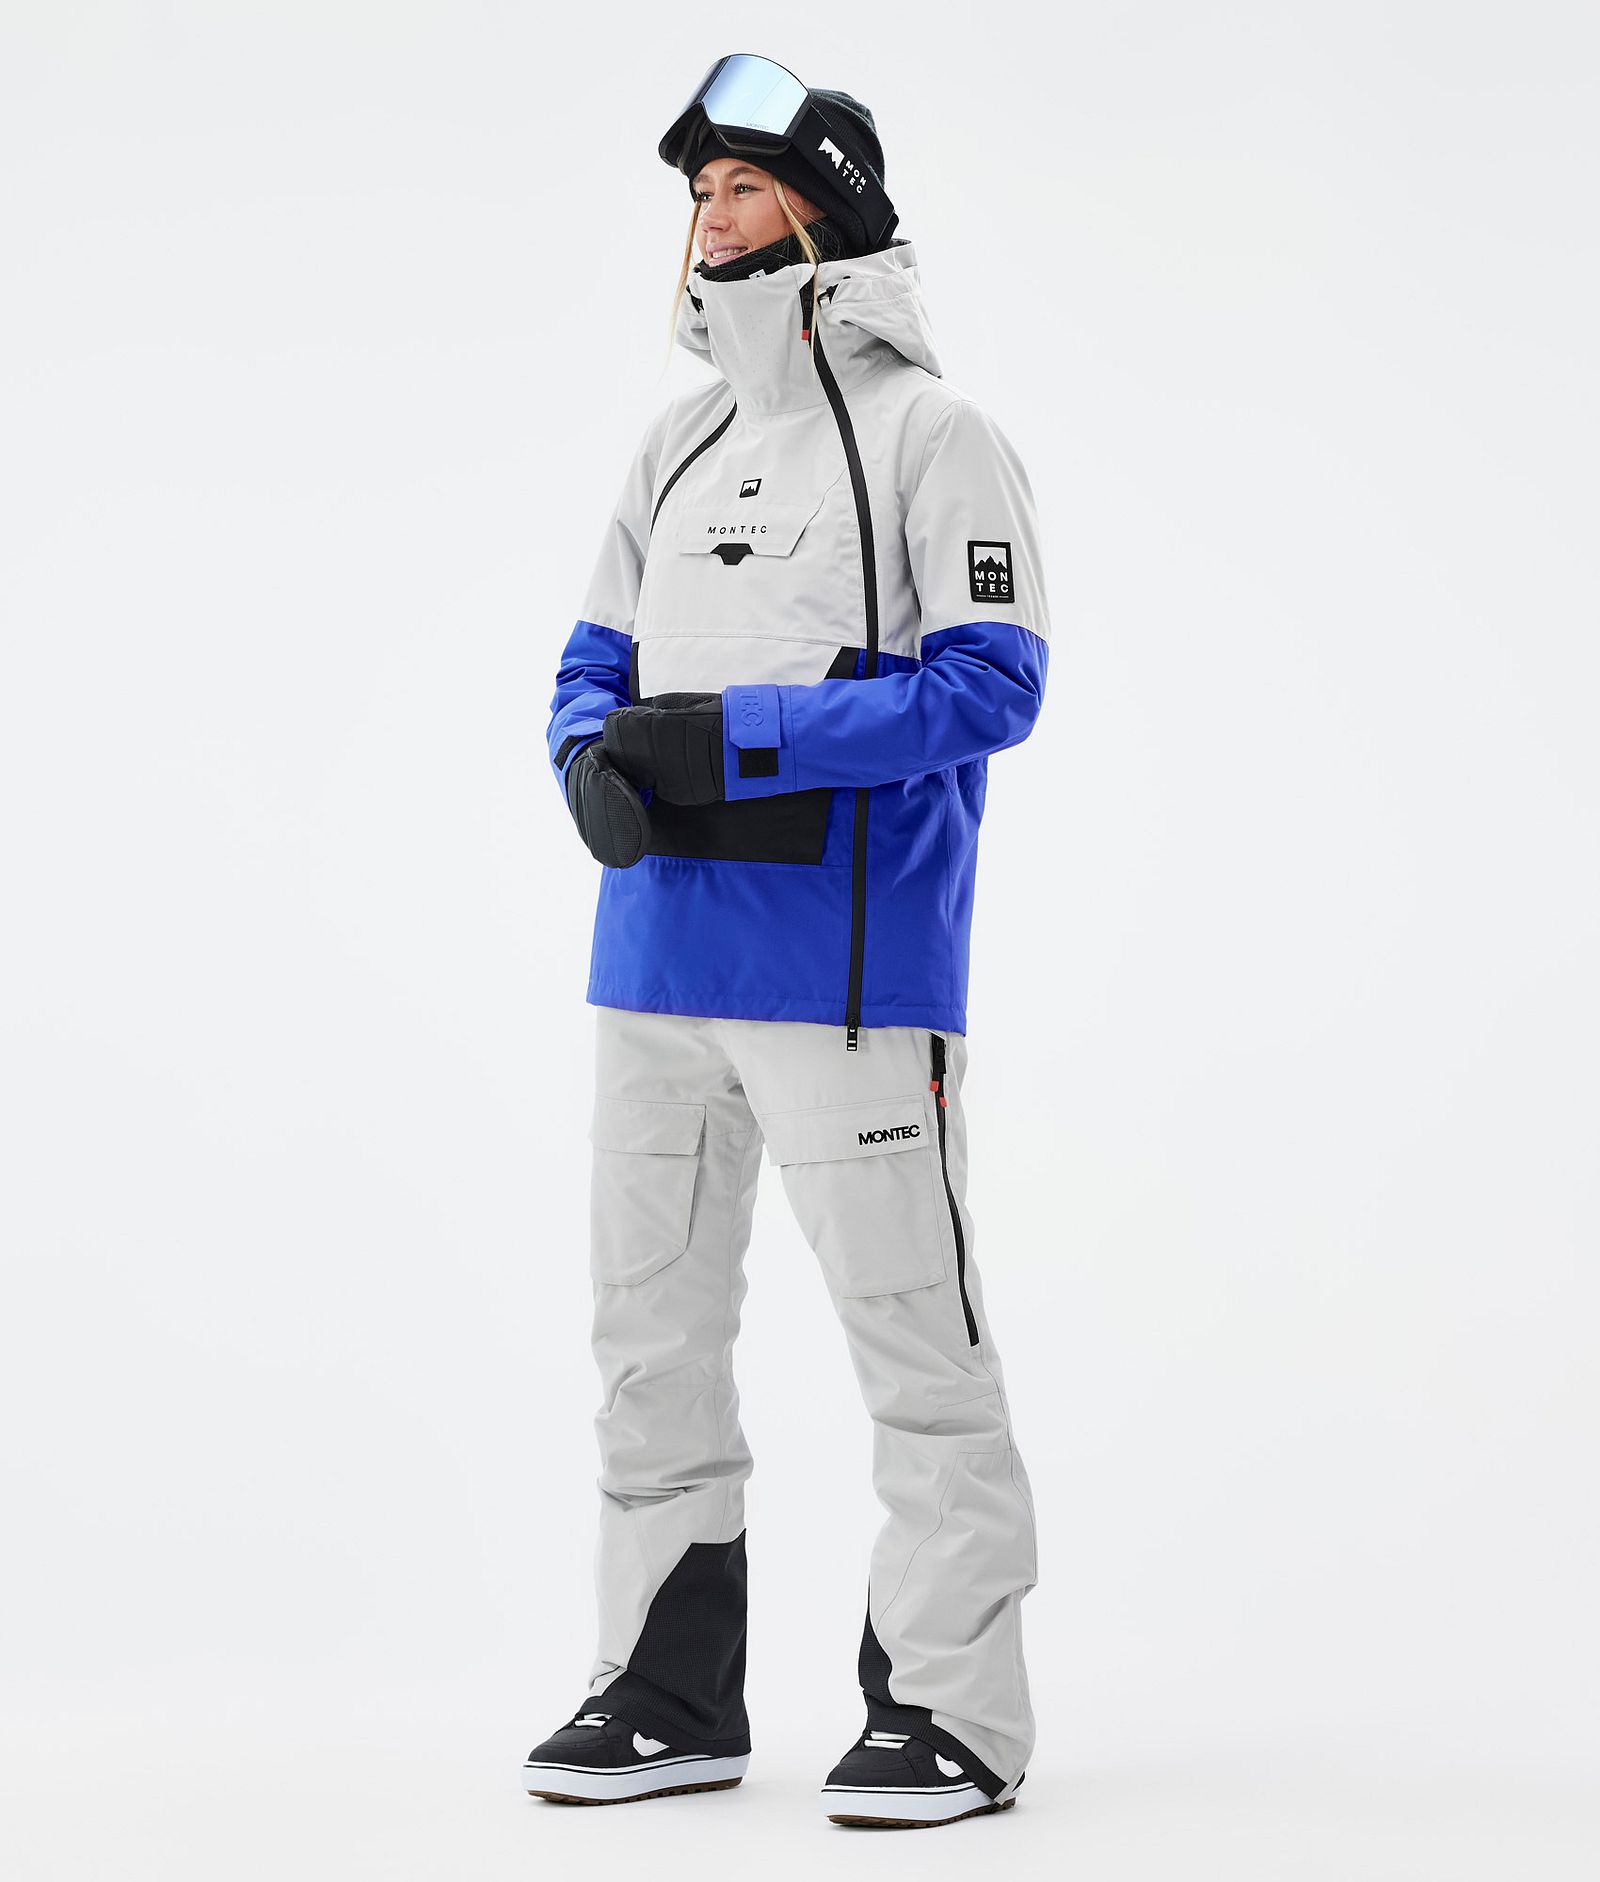 Montec Kirin W Pantalon de Snowboard Femme Light Grey